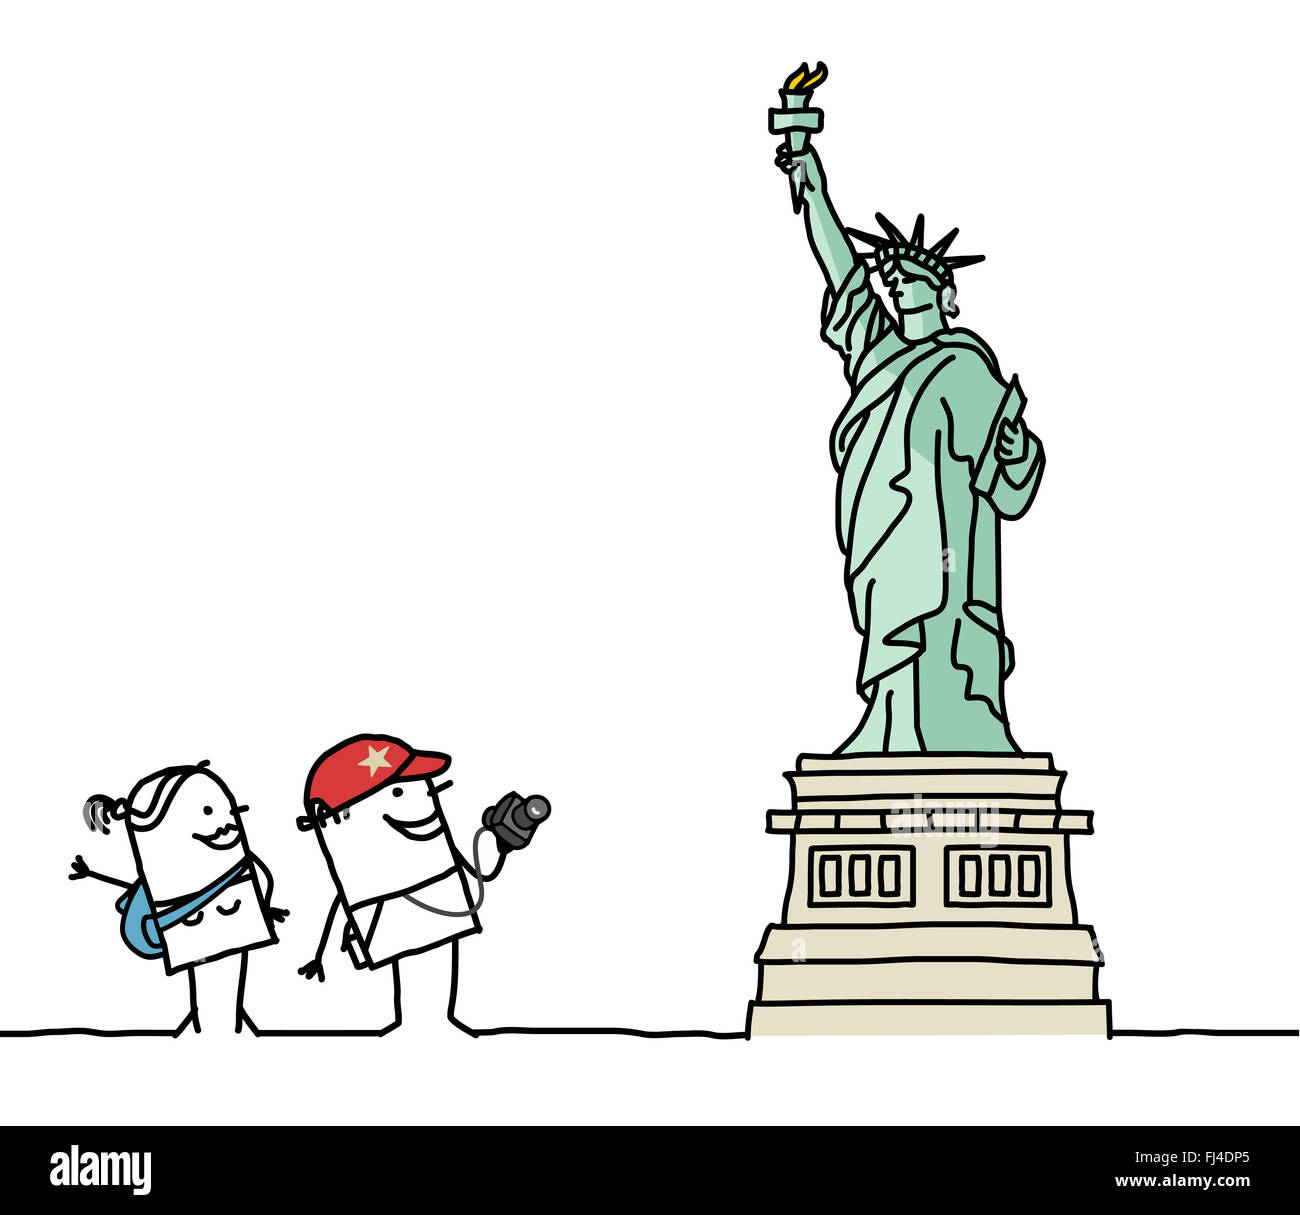 Статуя свободы 11 сентября 2001 карикатура